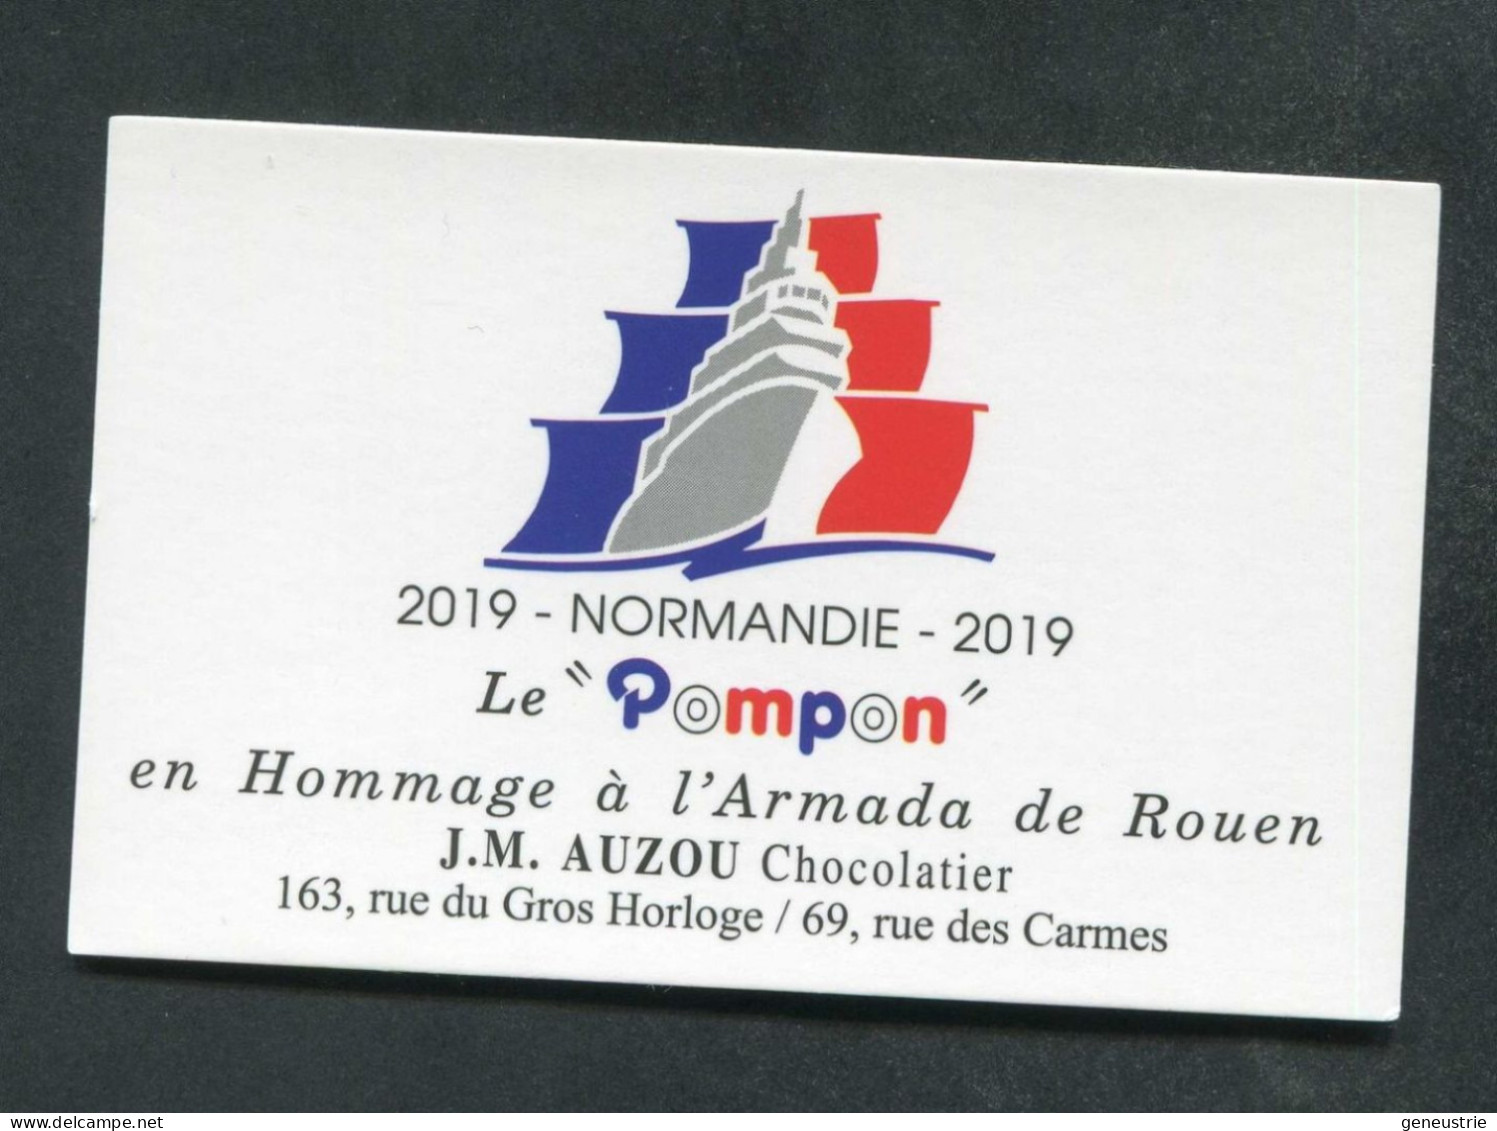 Carte De Visite "Le Pompon" En Hommage à L'Armada De Rouen - Normandie 2019 - J.M. Auzou Chocolatier - Cartes De Visite